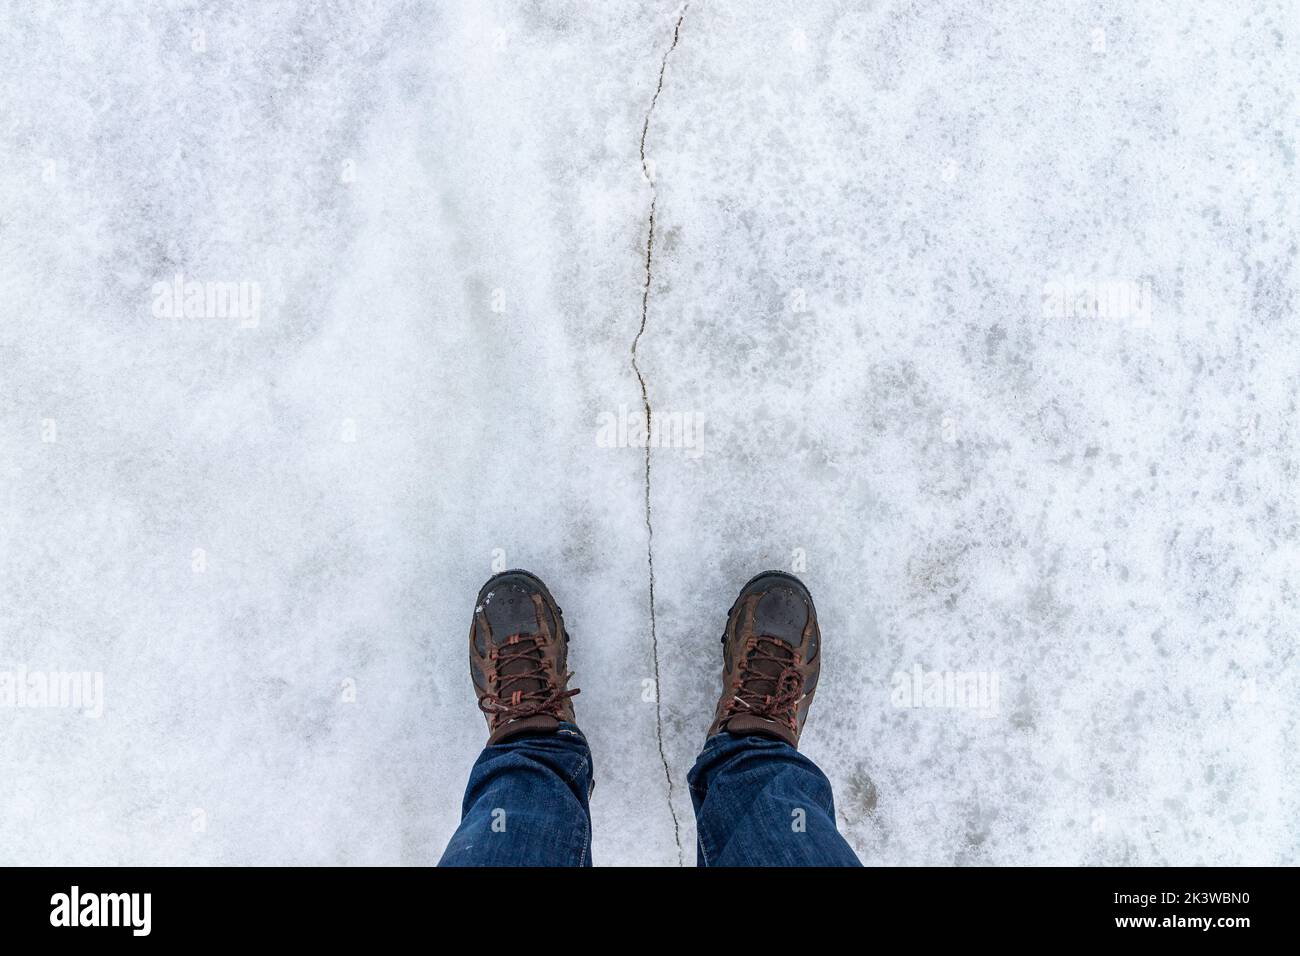 Los pies masculinos están de pie sobre un hielo nevado con grietas, vista en primera persona, vista superior Foto de stock